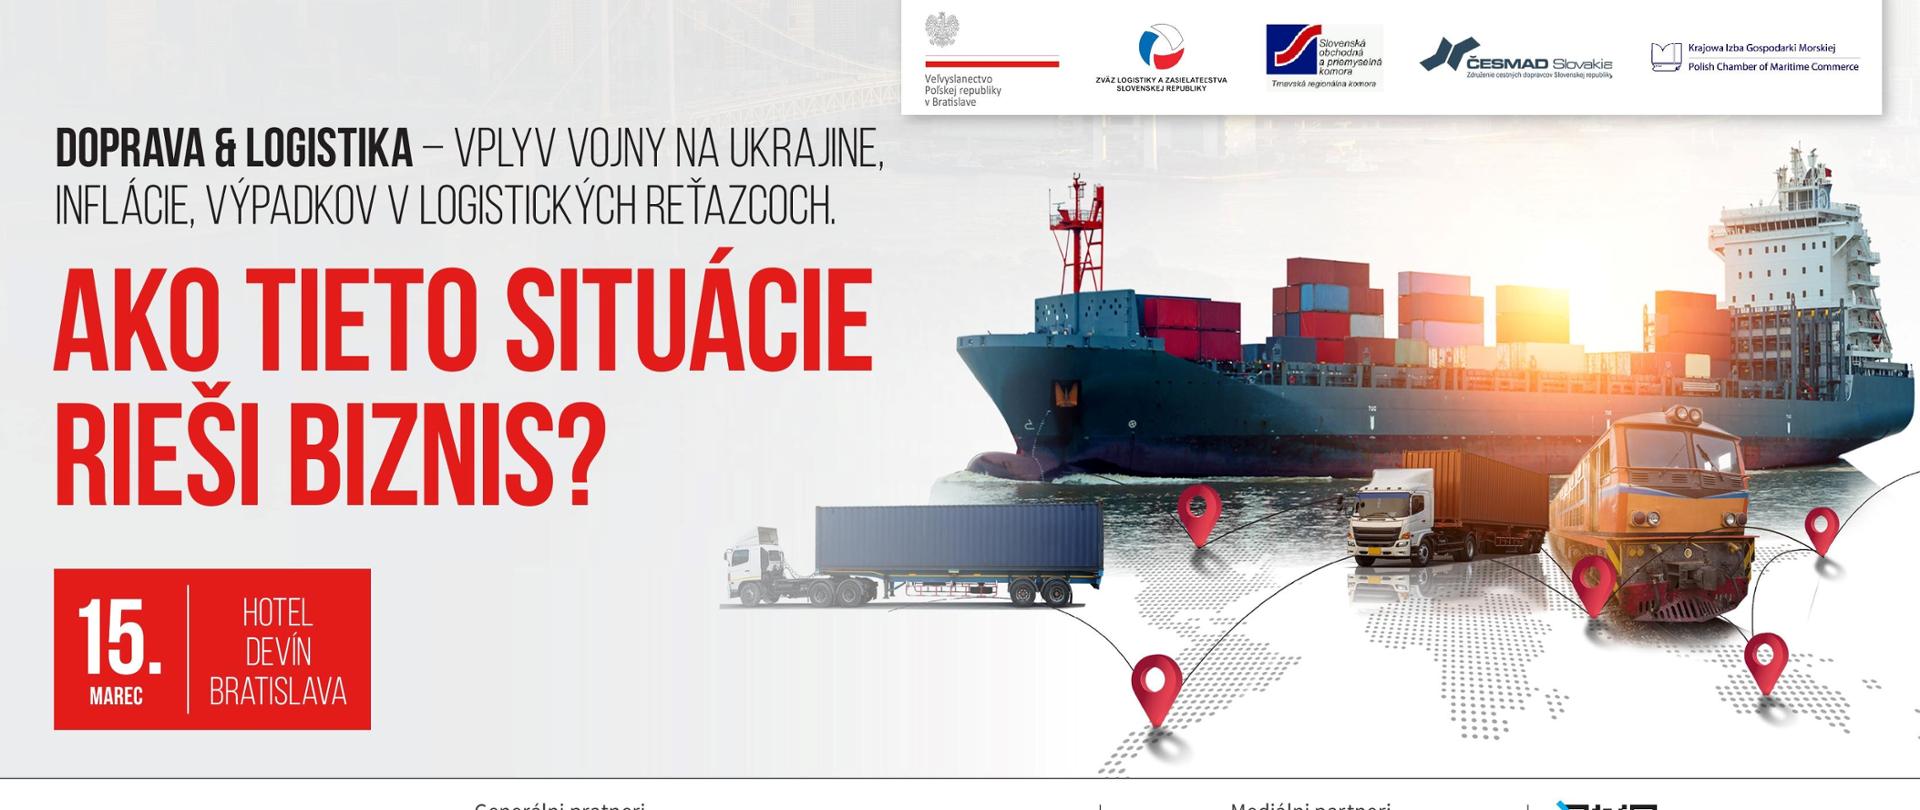 Doprava & logistika - vplyv vojny na Ukrajine, inflácie, výpadkov v logistických reťazcoch